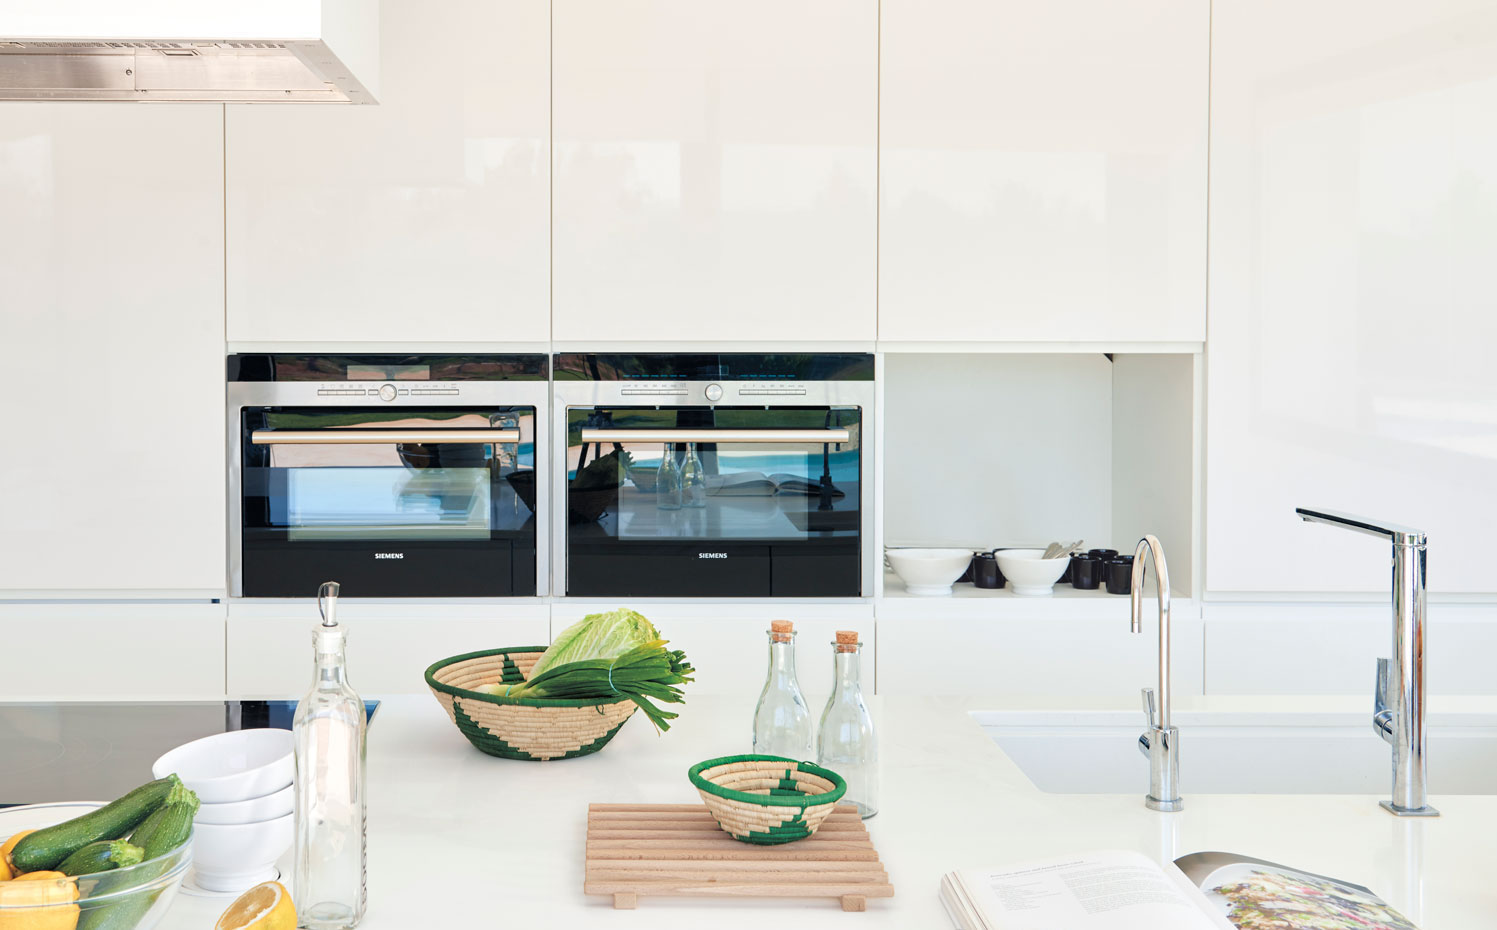 Cocina blanca diseñada por Iván Torres en Ibiza. Electrodomésticos de Siemens